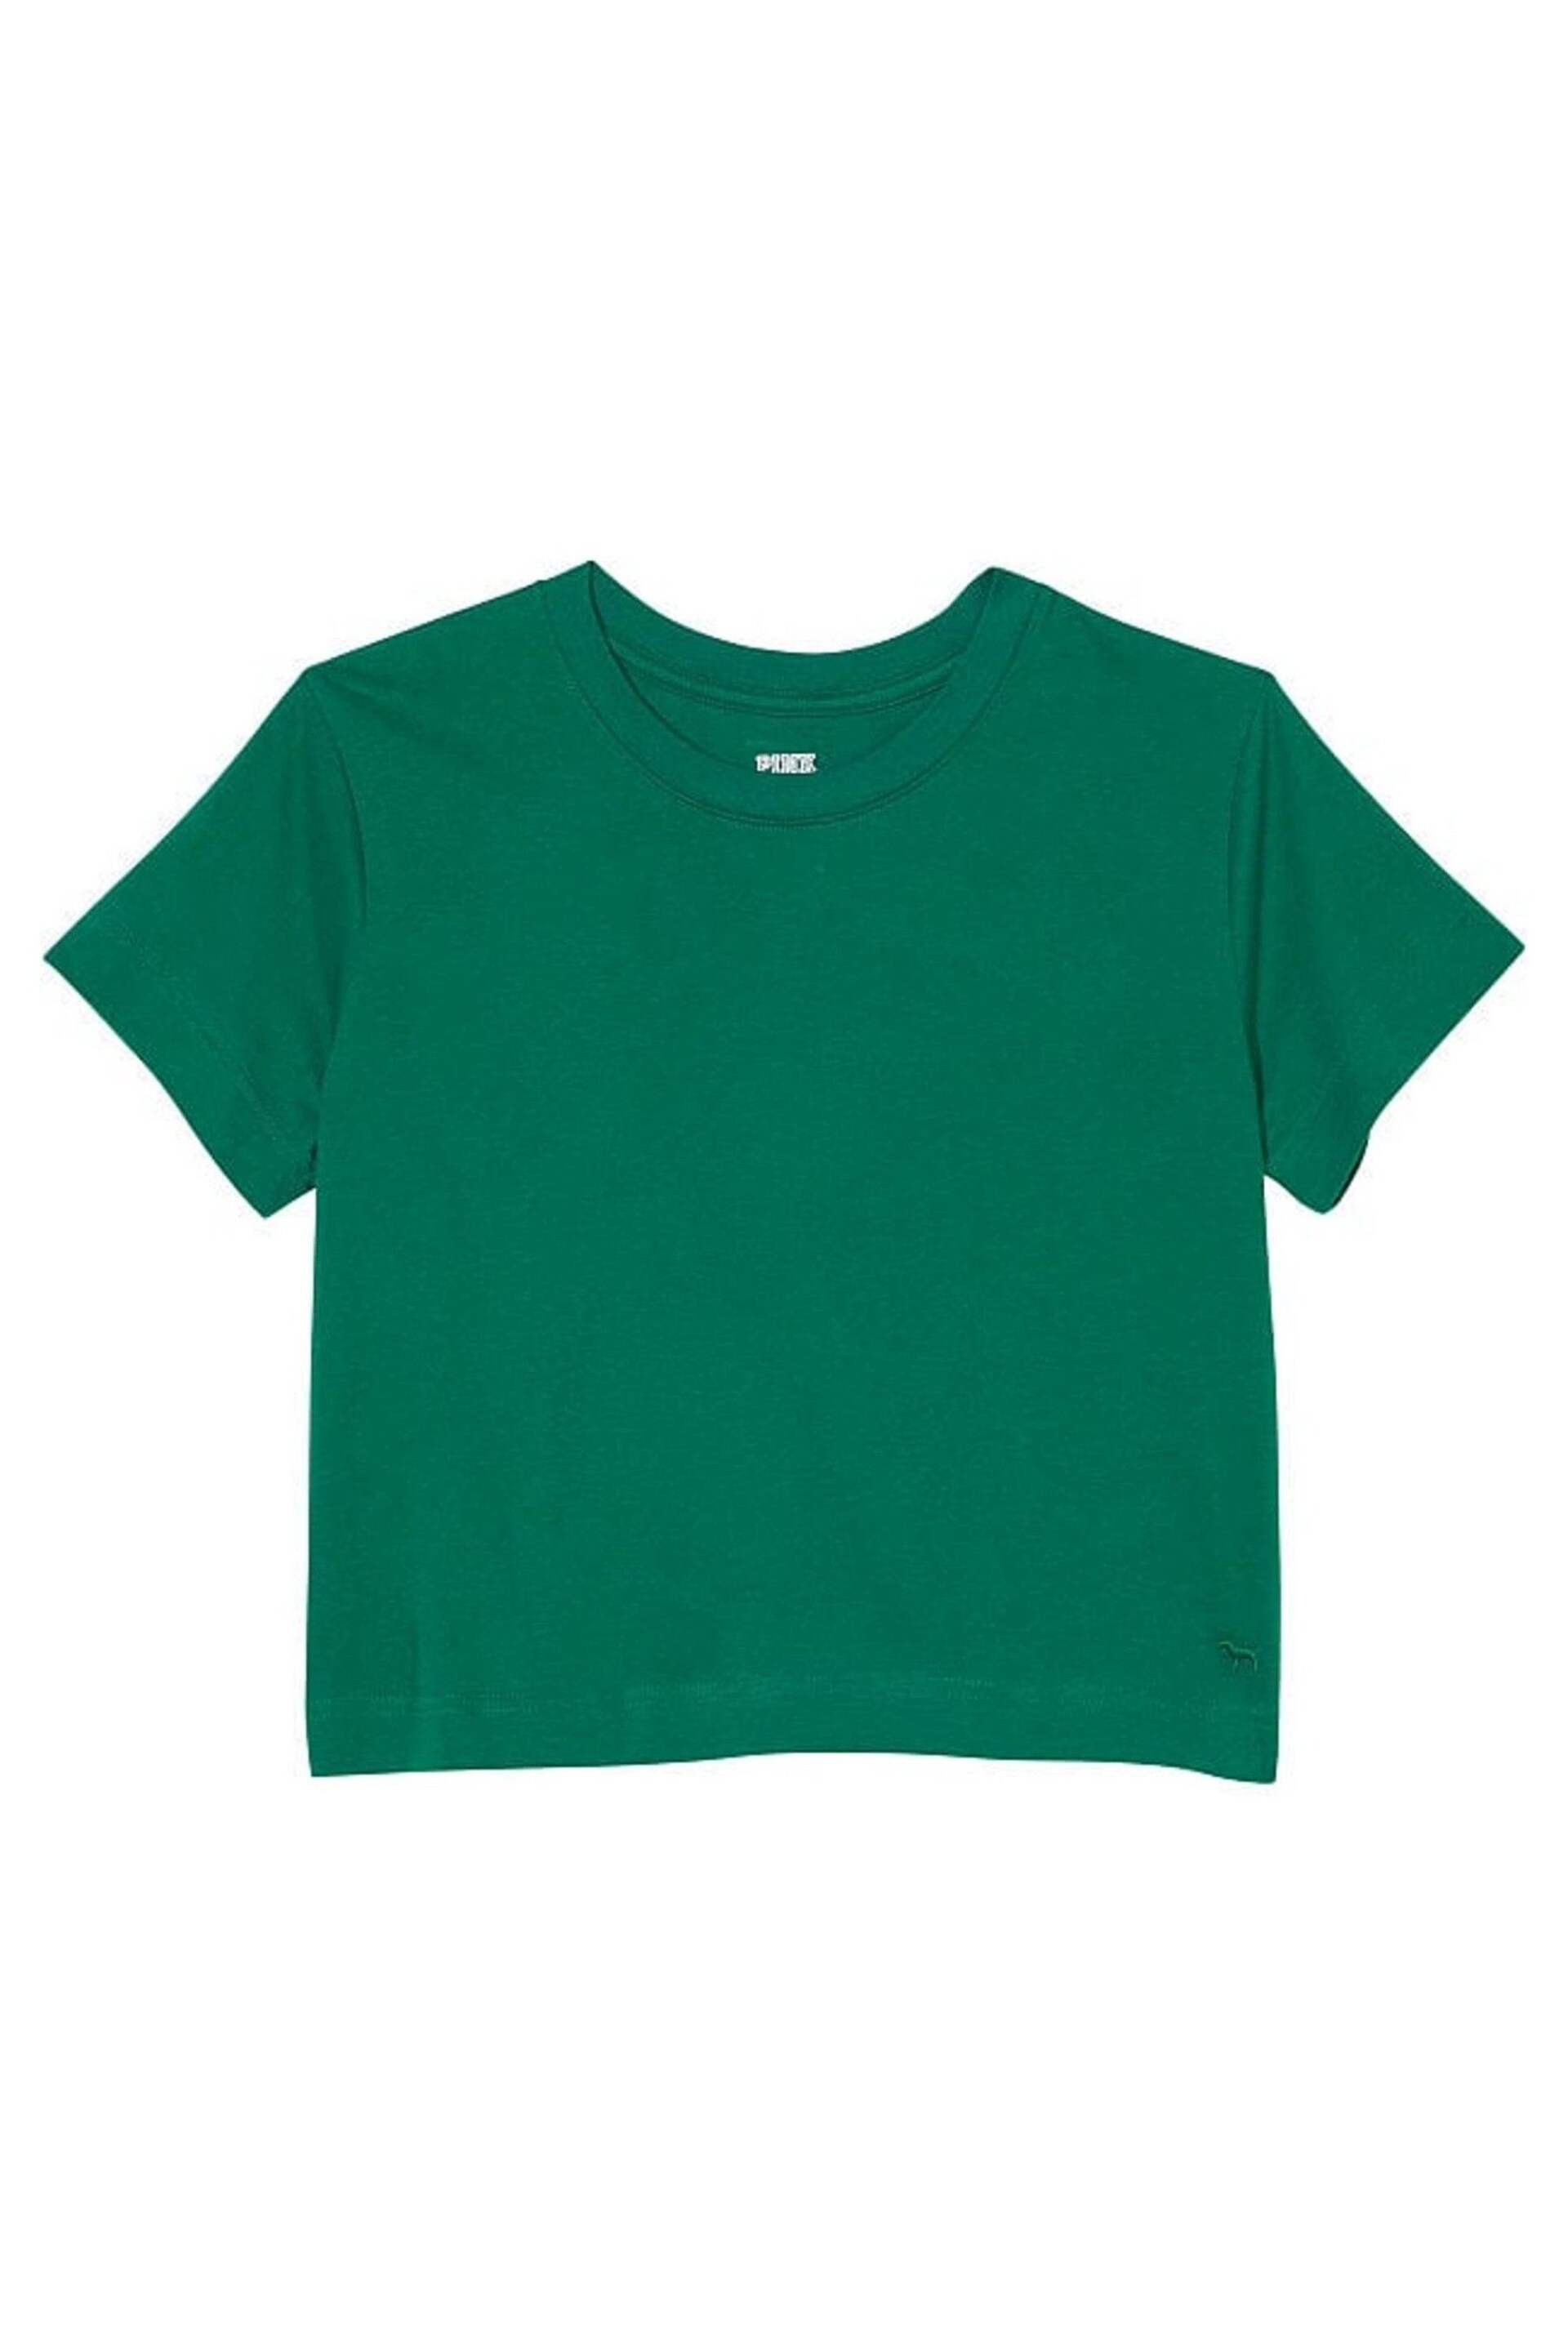 Victoria's Secret PINK Garnet Green Short Sleeve Shrunken T-Shirt - Image 4 of 4